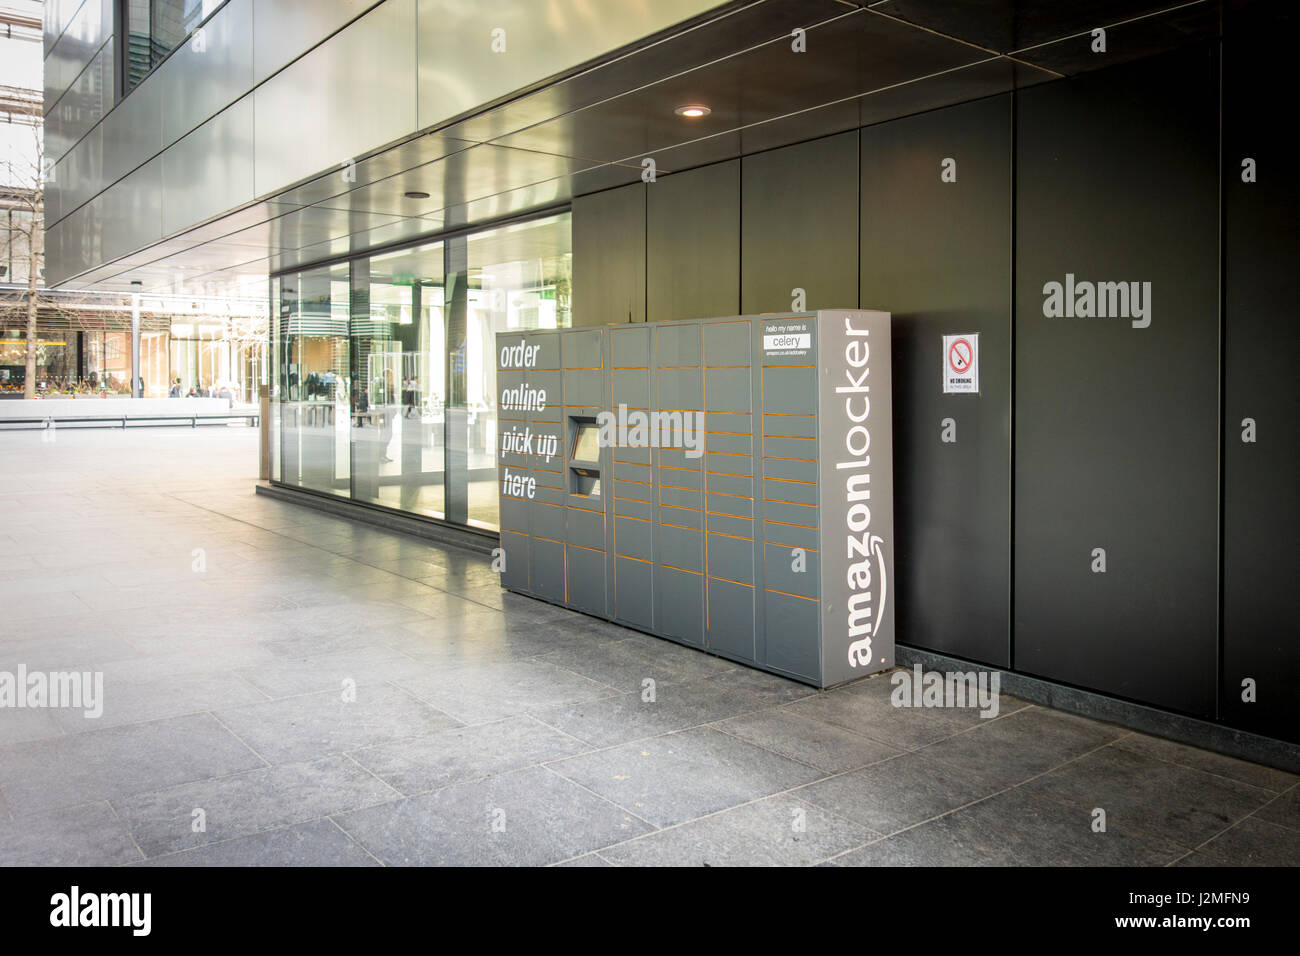 Amazon Locker Immagini e Fotos Stock - Alamy